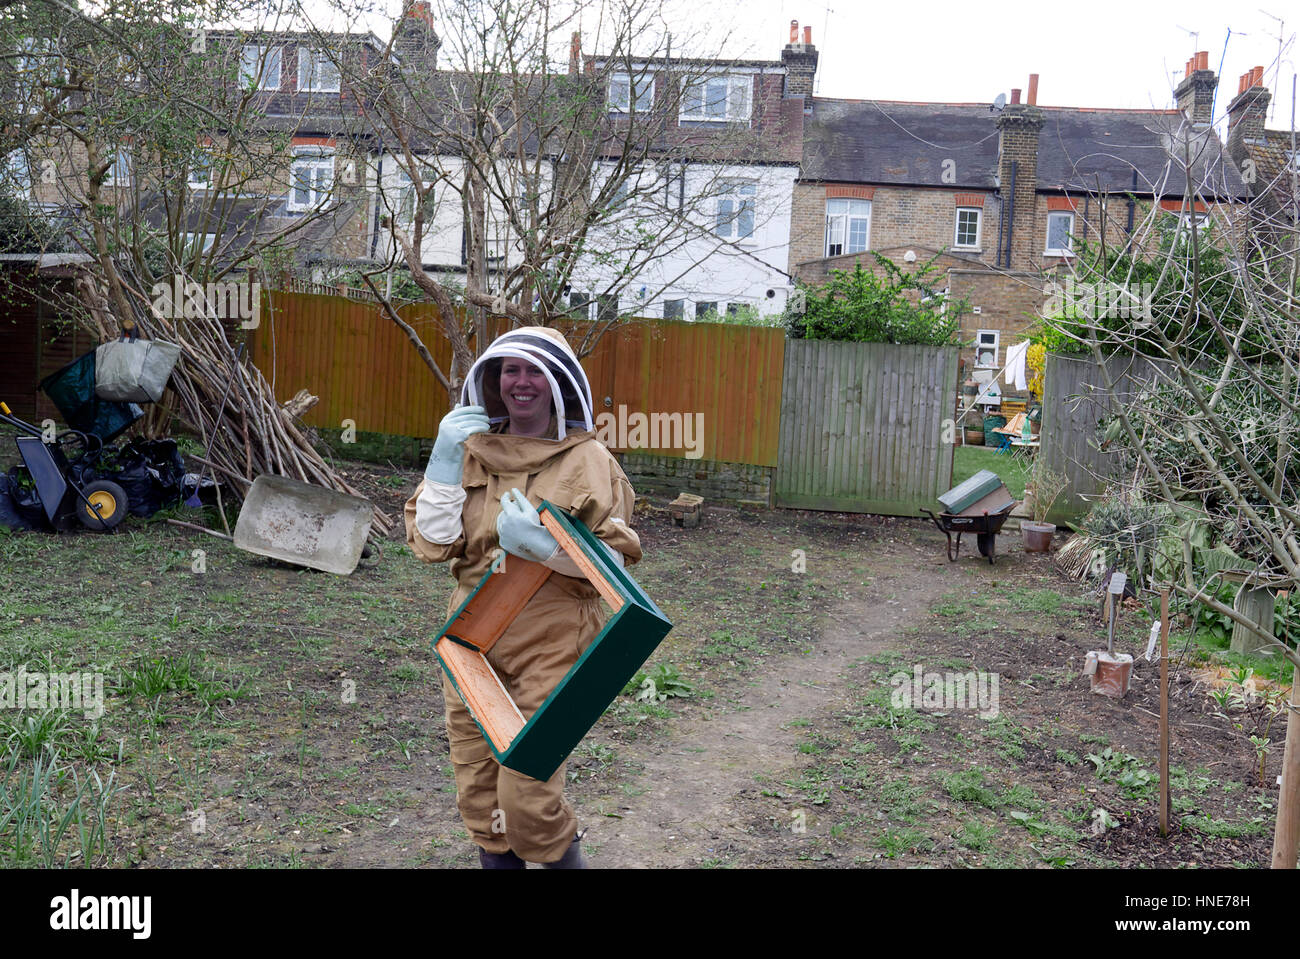 United Kingdom London ealing apiculture urbaine dans le jardin arrière Banque D'Images